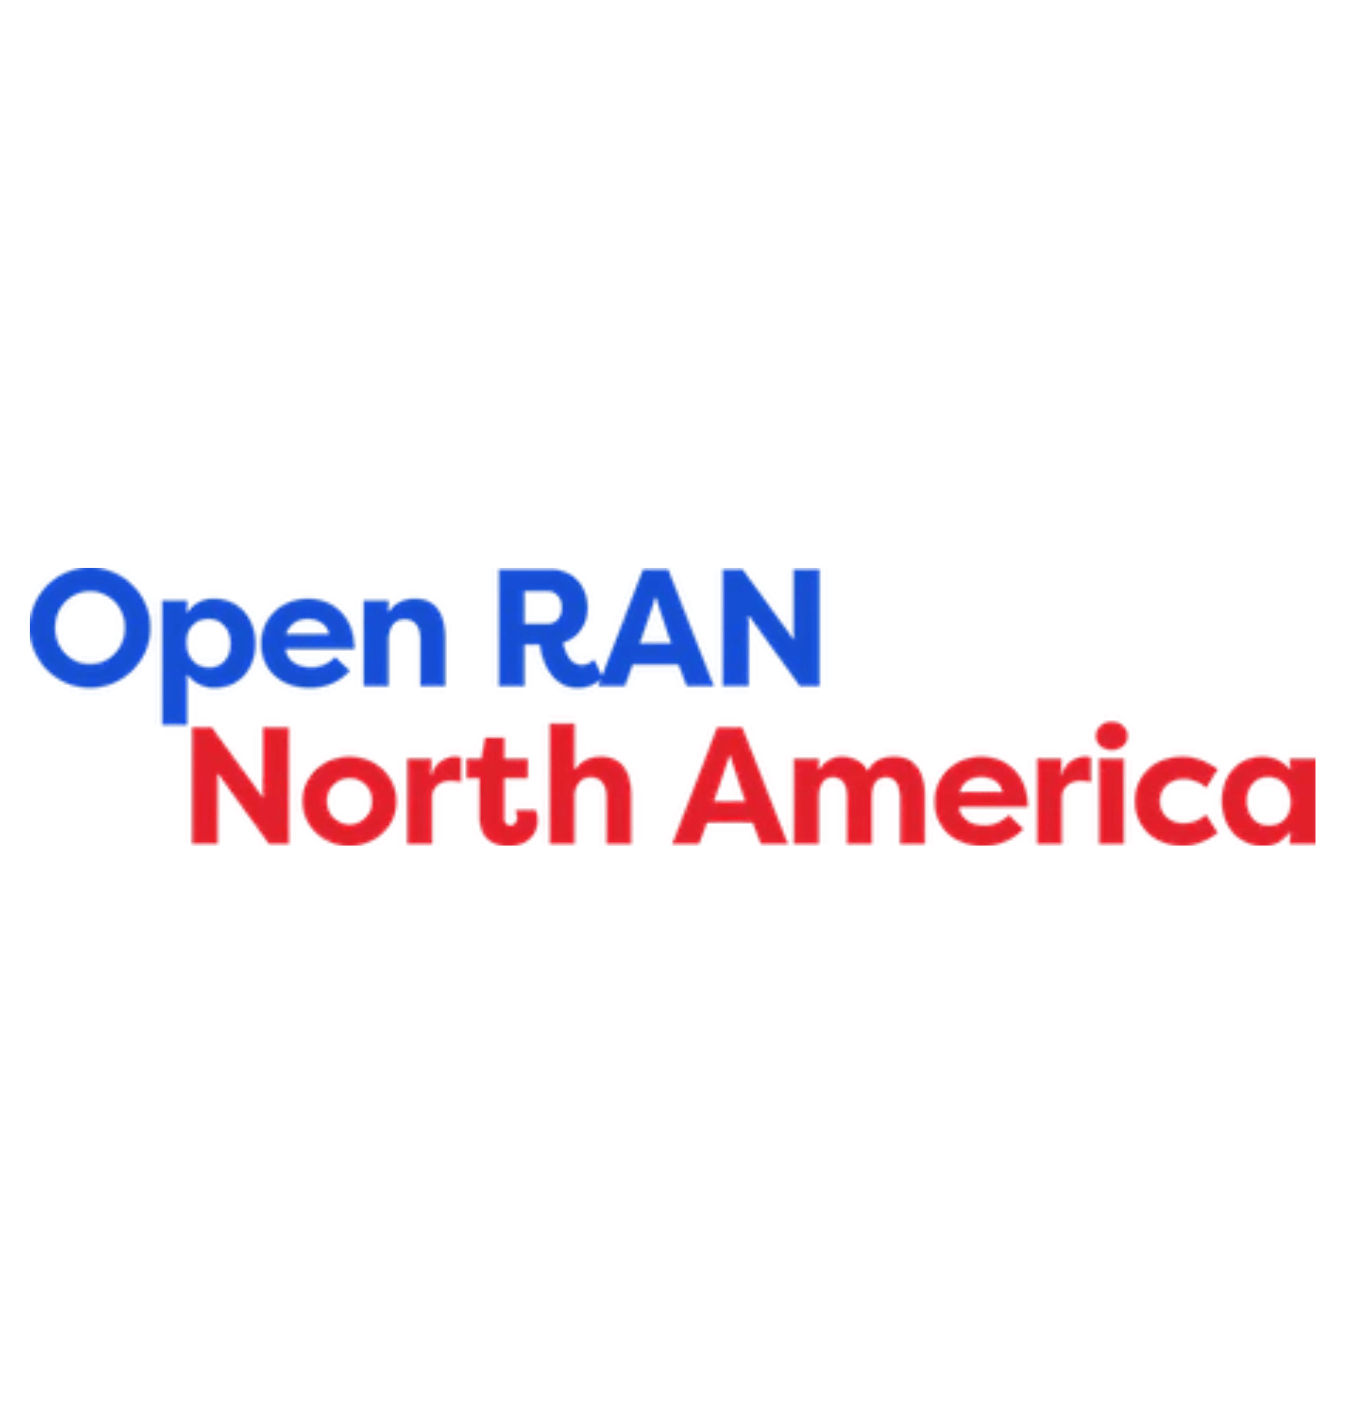 Open RAN North America